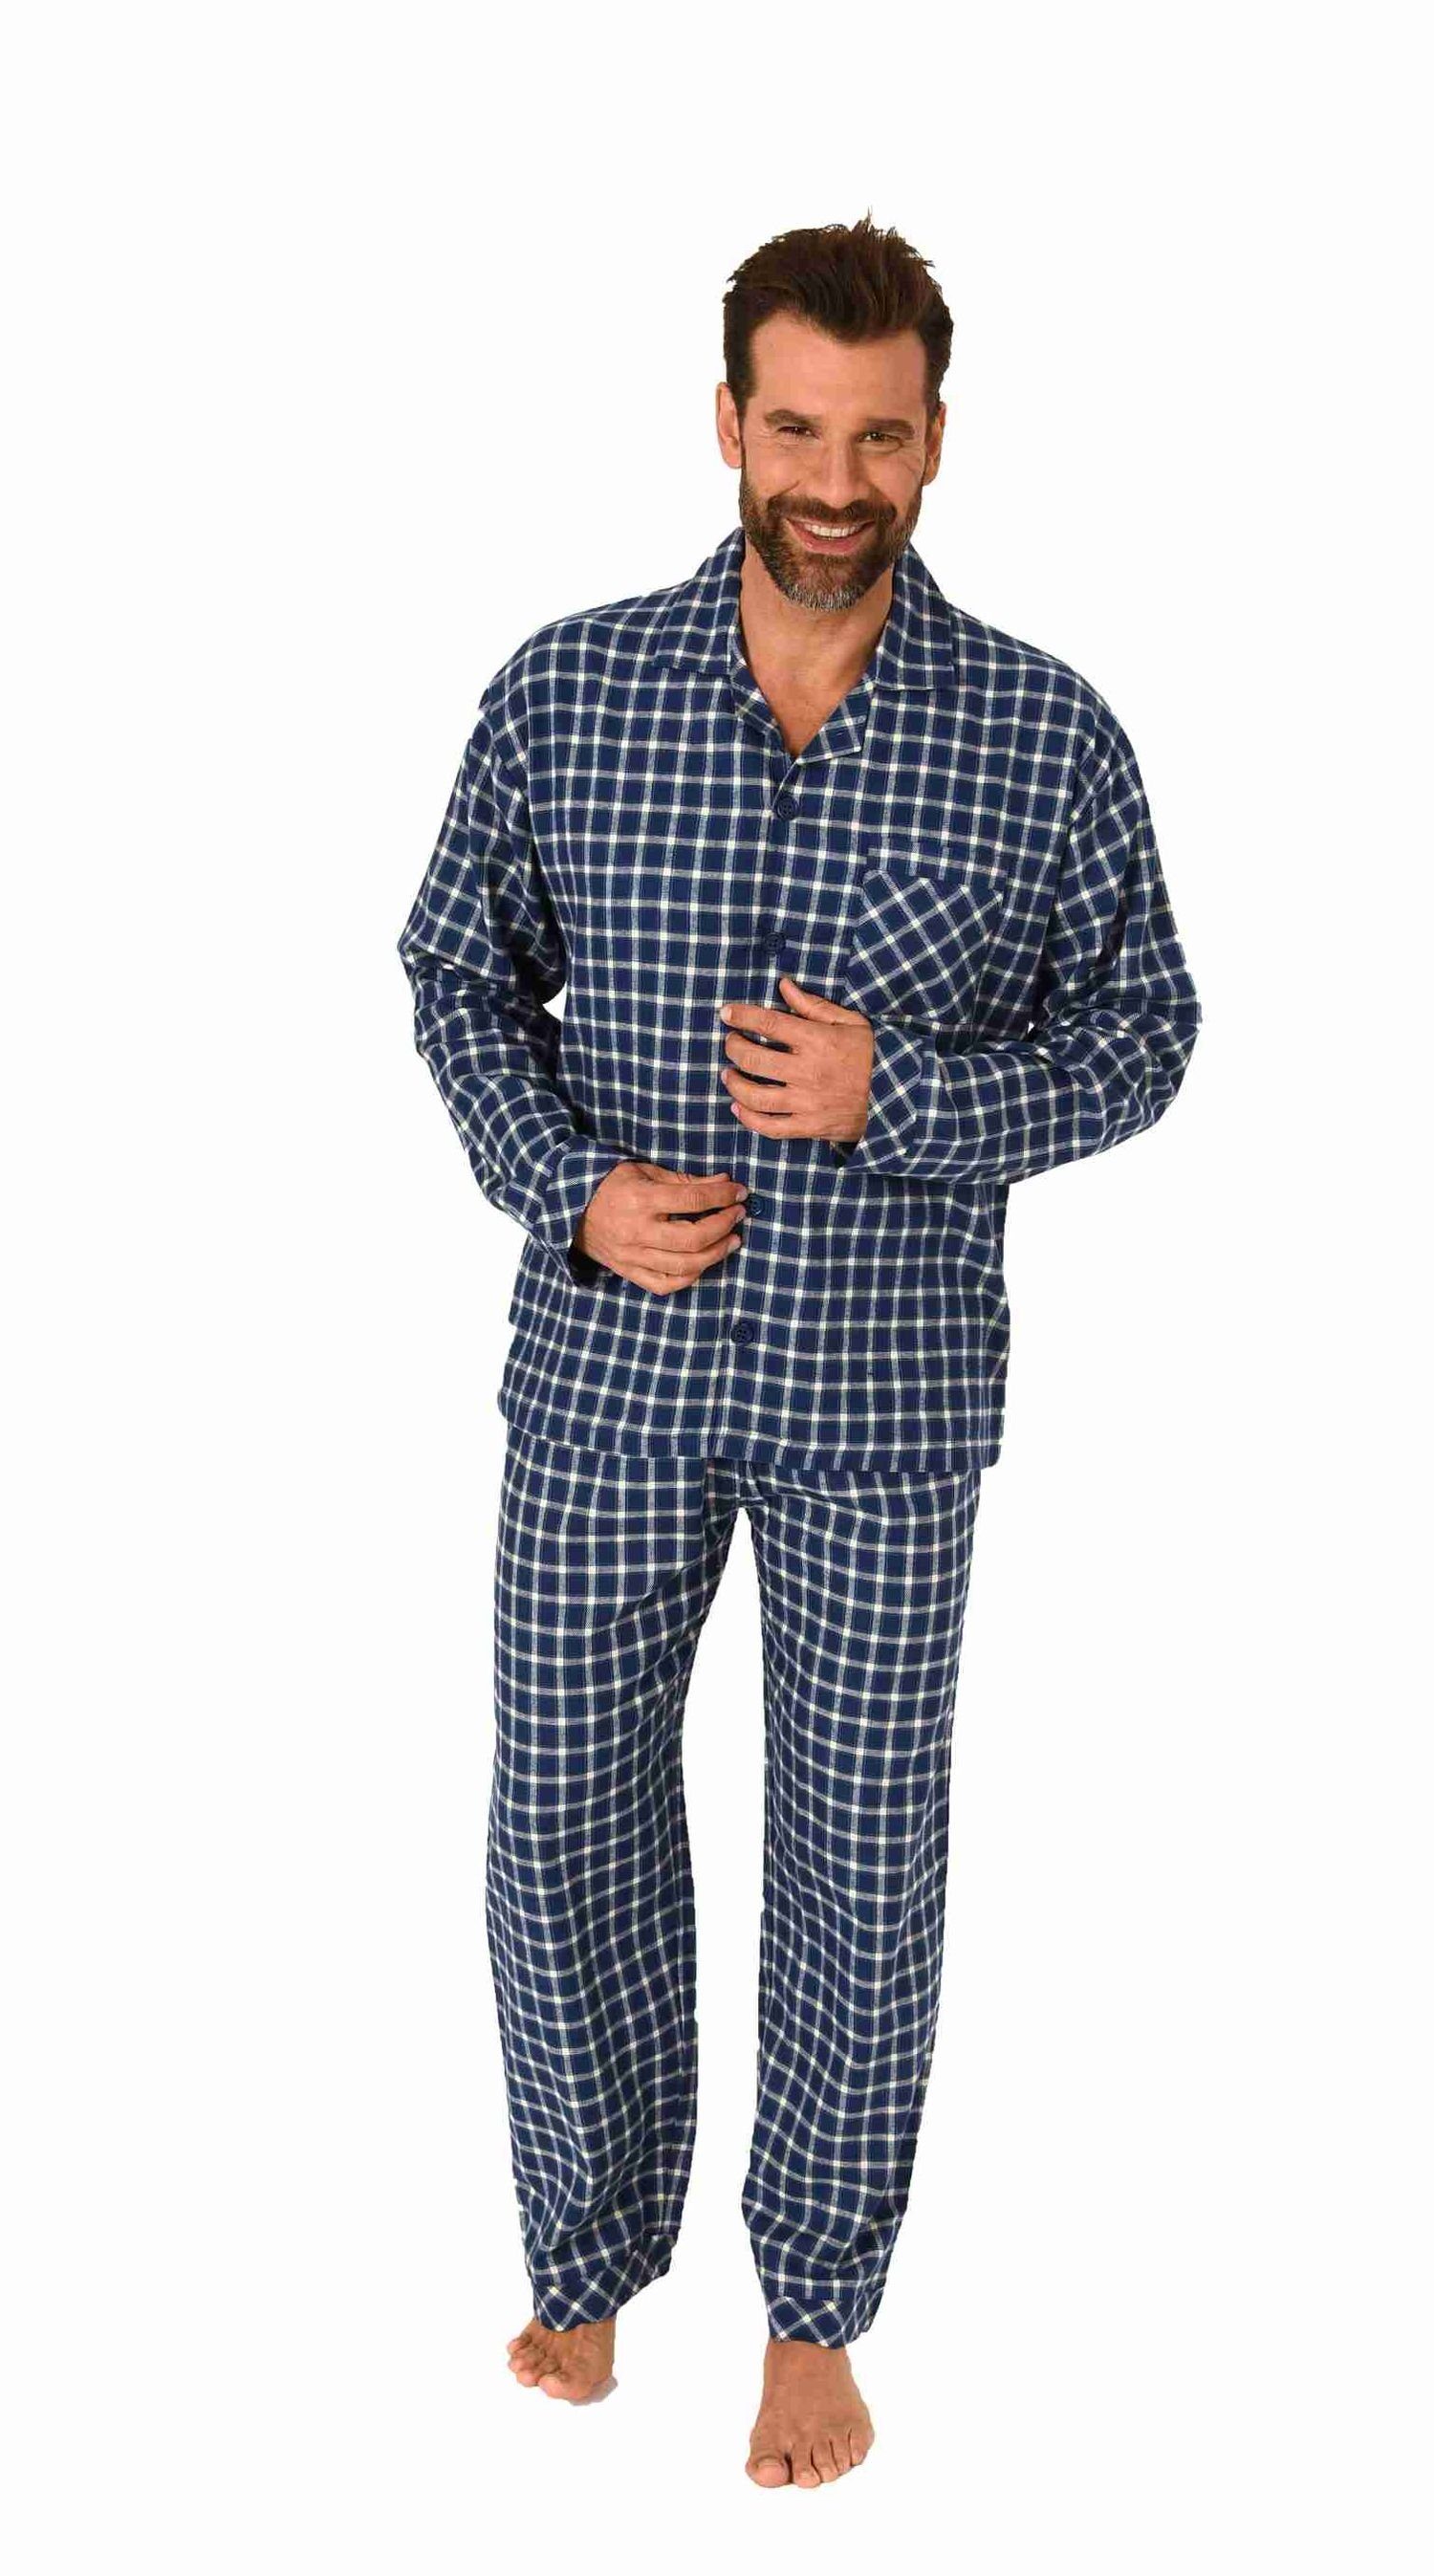 CECEBA kurzer Herren Pyjama Schlafanzug schwarz weiß Streifen modisch neu